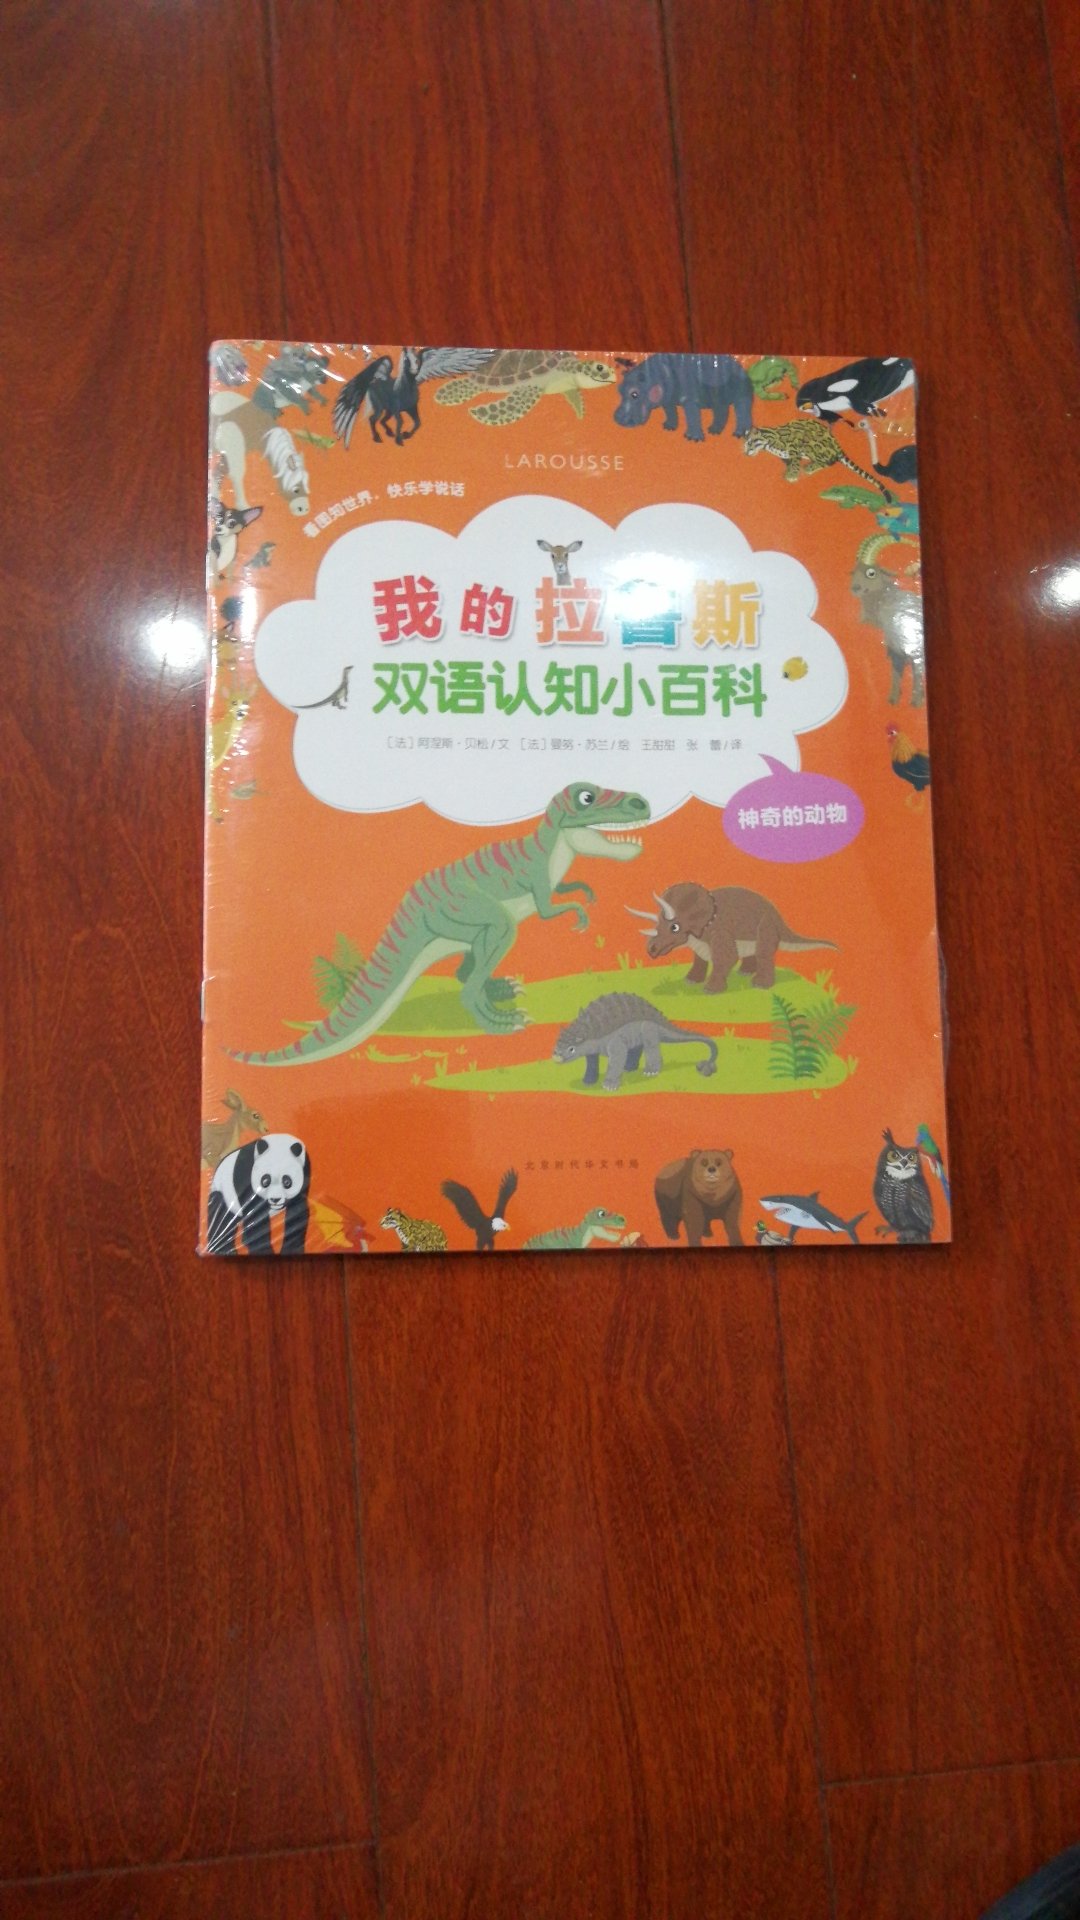 中英双语绘本，买过前7册，还不错，孩子喜欢，拉鲁斯出版社的百科老品牌，果断买了新出的这三本。